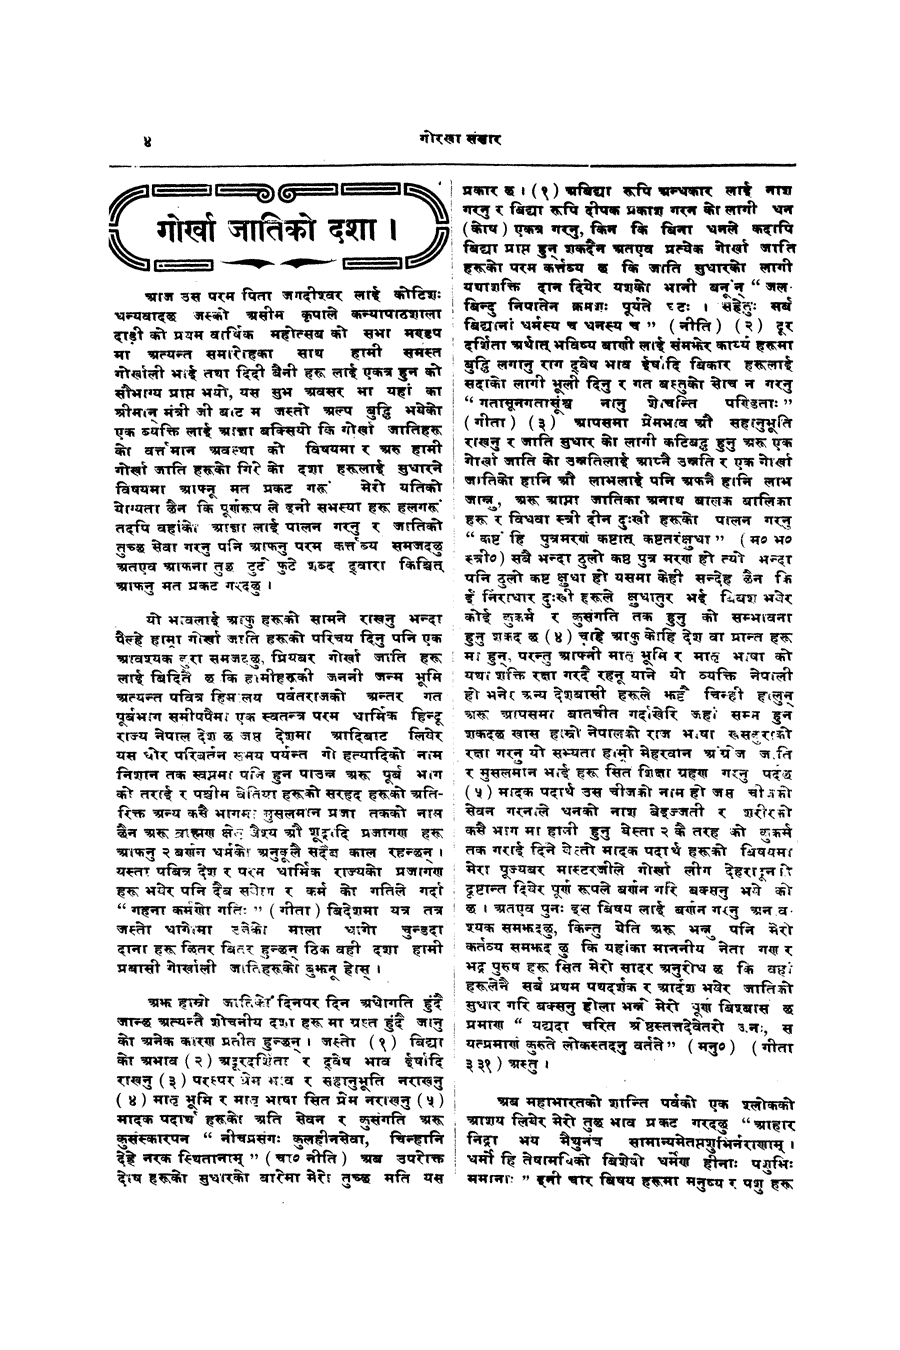 Gorkha Sansar, 23 Nov 1926, page 4